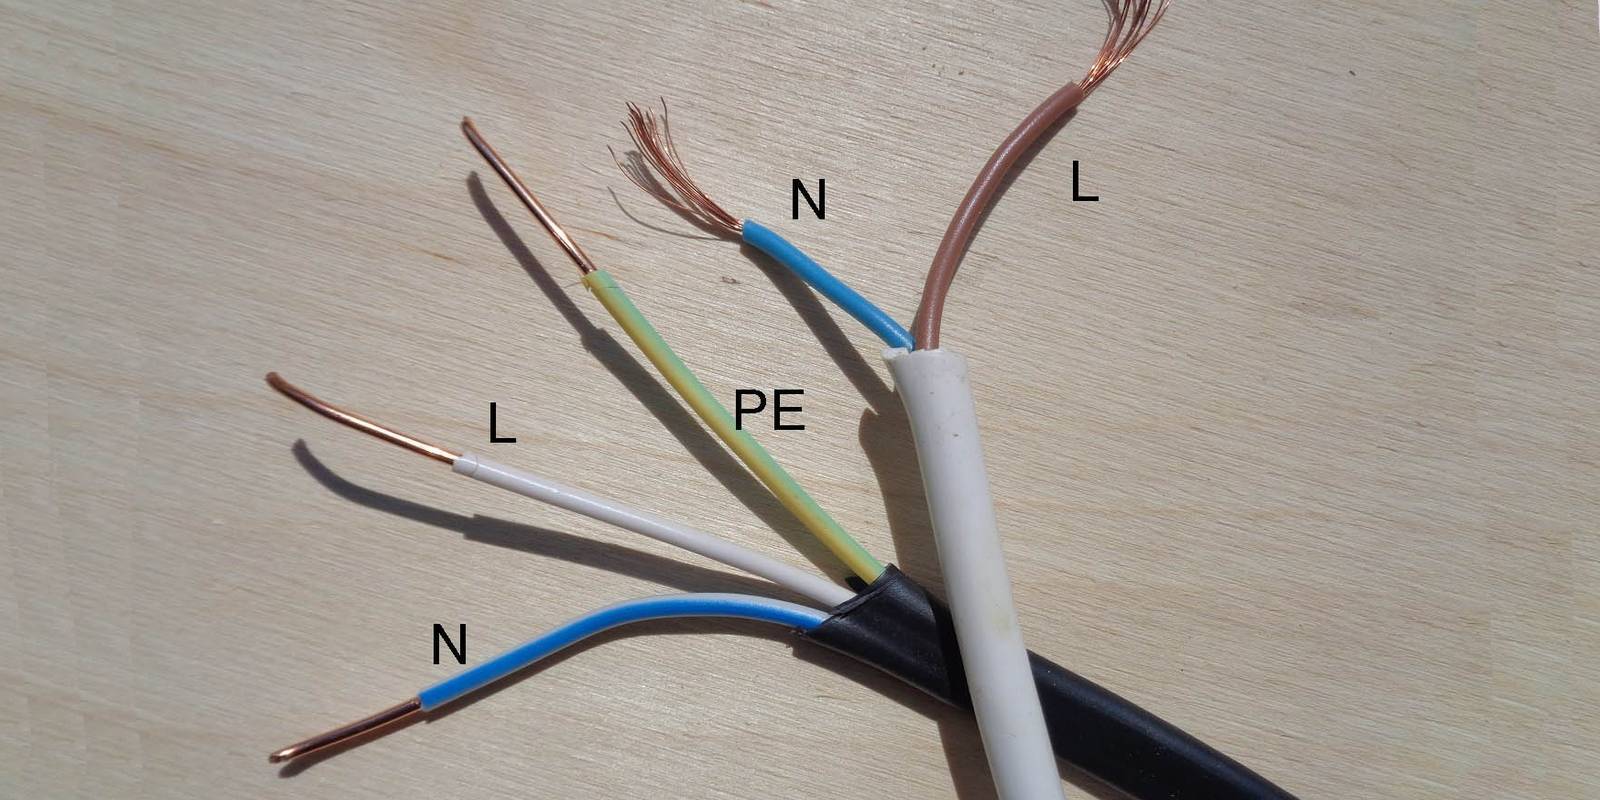 Цветовая маркировка проводов в трехфазных сетях: каким цветом обозначается фаза и ноль